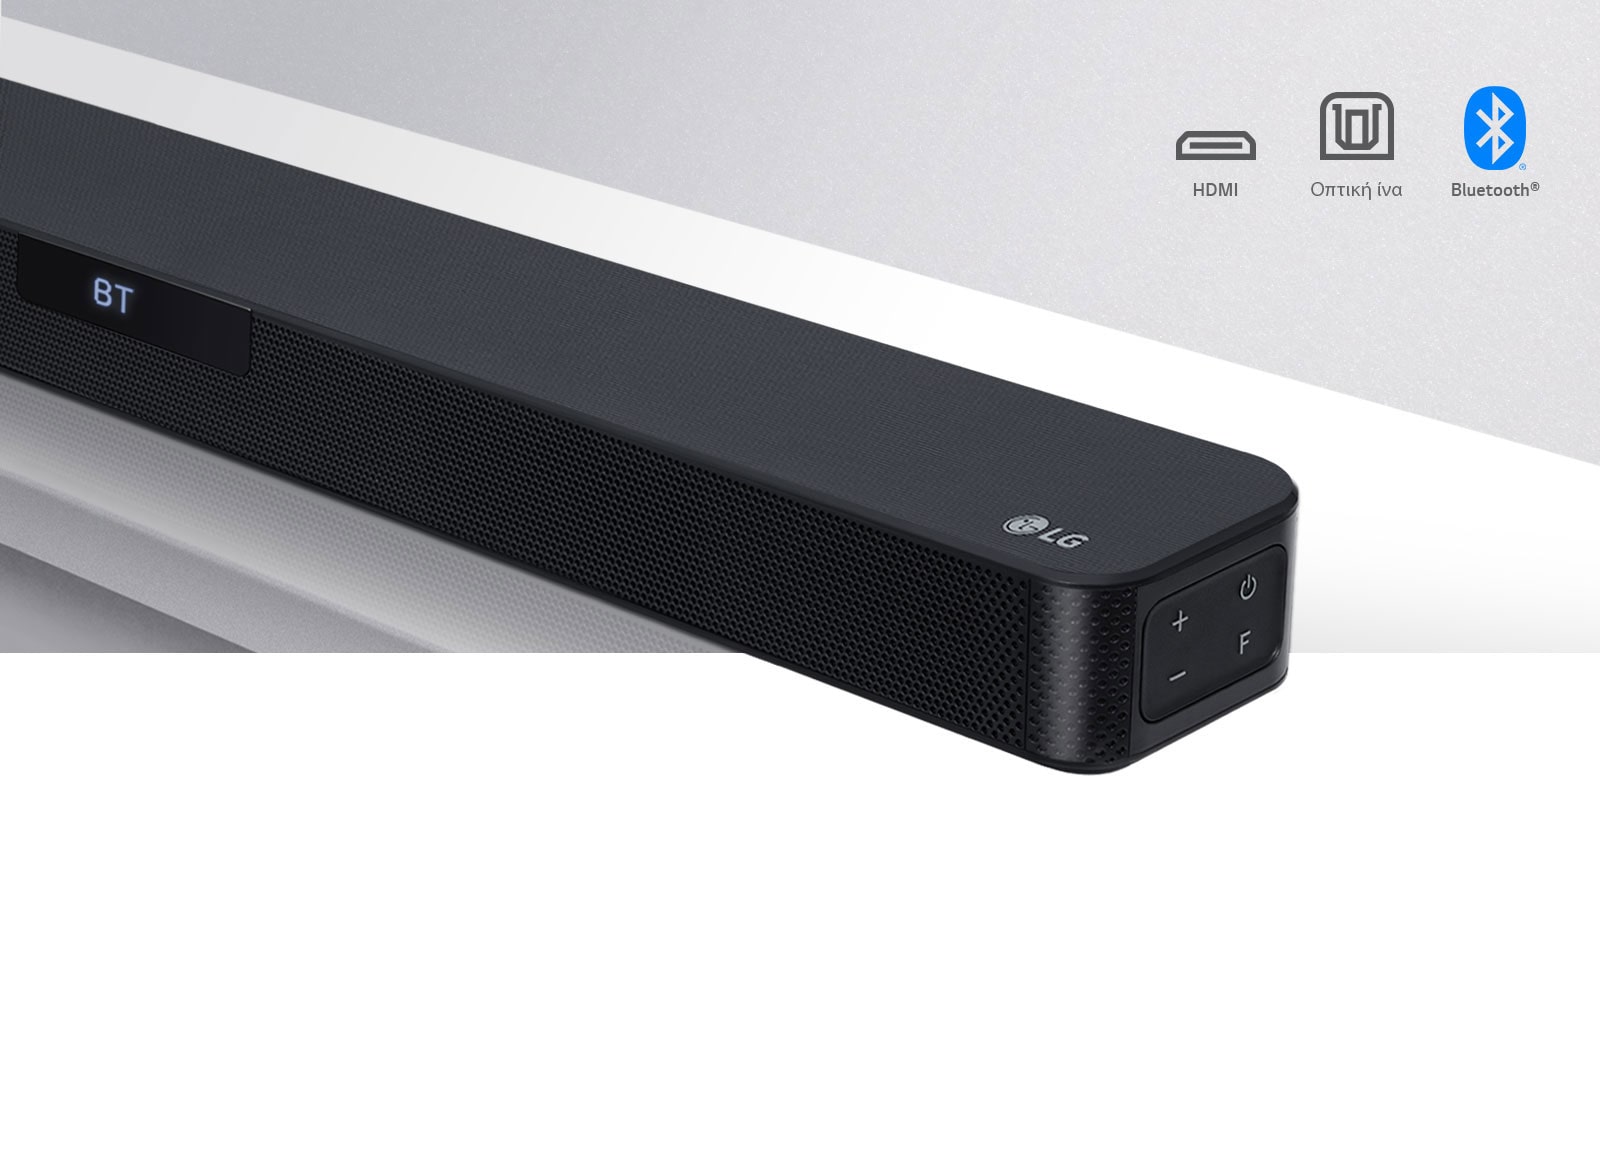 Κοντινό του LG Sound Bar με το λογότυπο της LG κάτω δεξιά. Τα εικονίδια συνδεσιμότητας φαίνονται επάνω από το προϊόν.